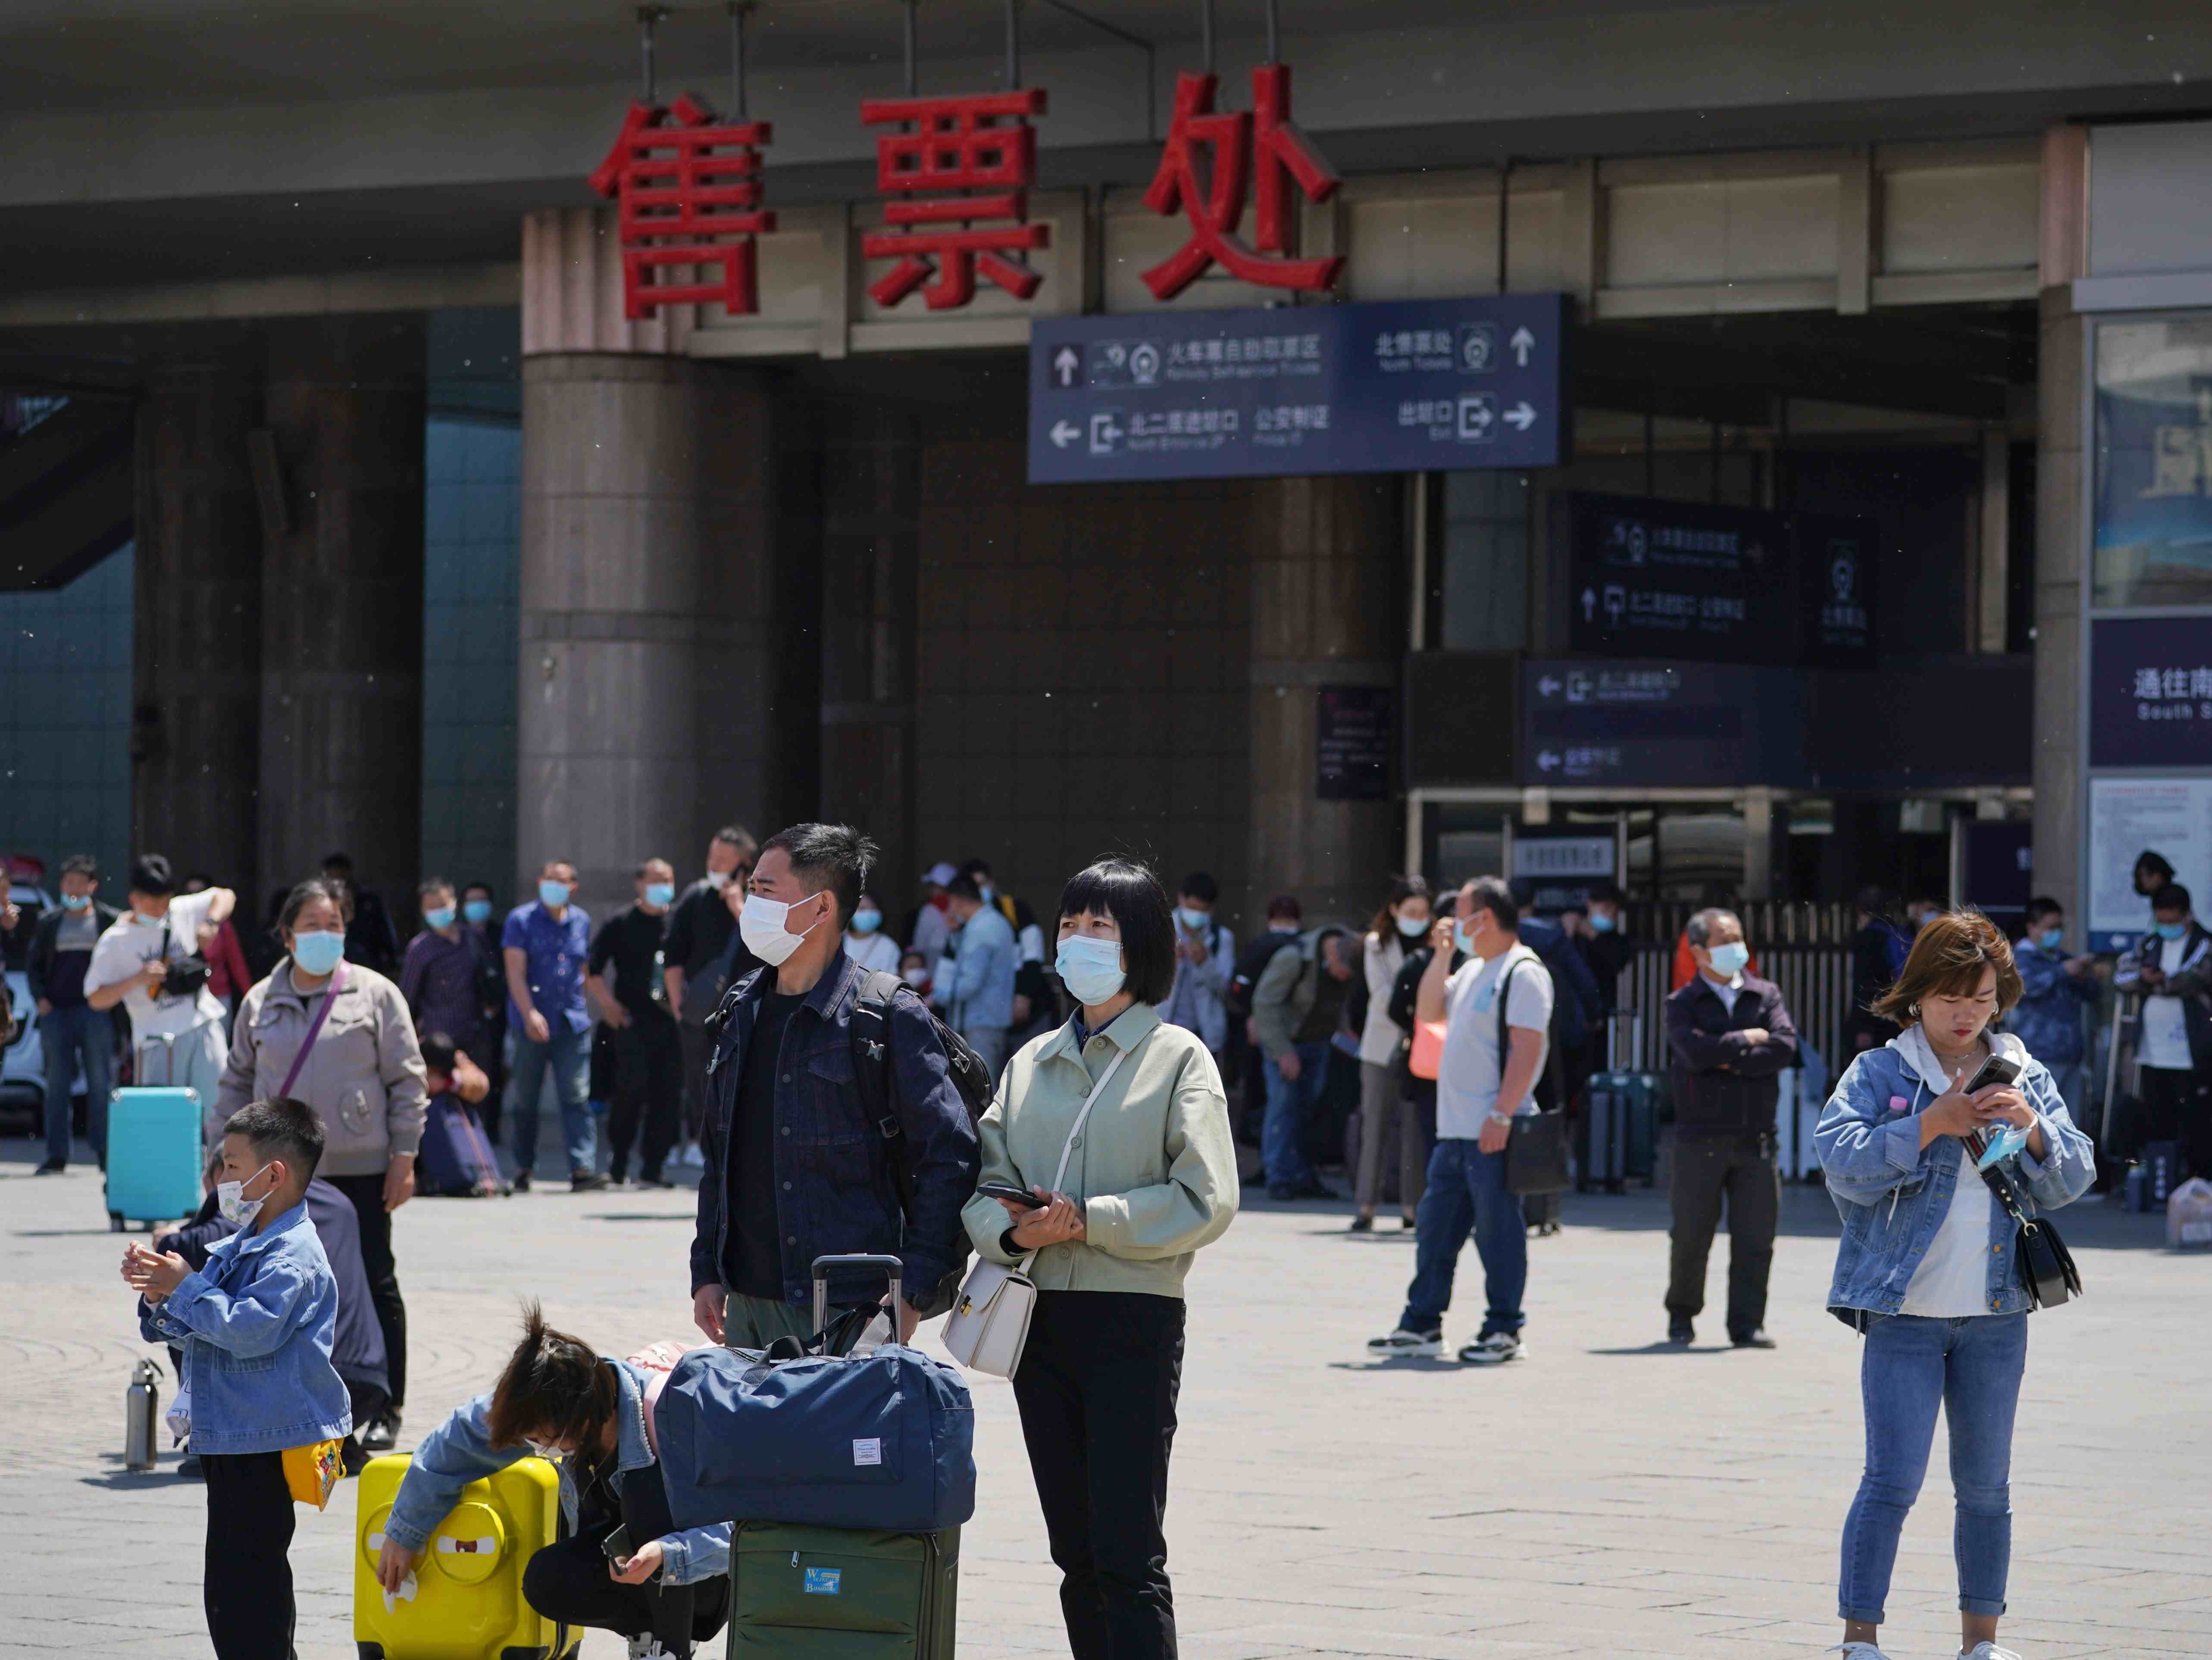 北京西火车站时刻表|北京西站运营秩序已恢复